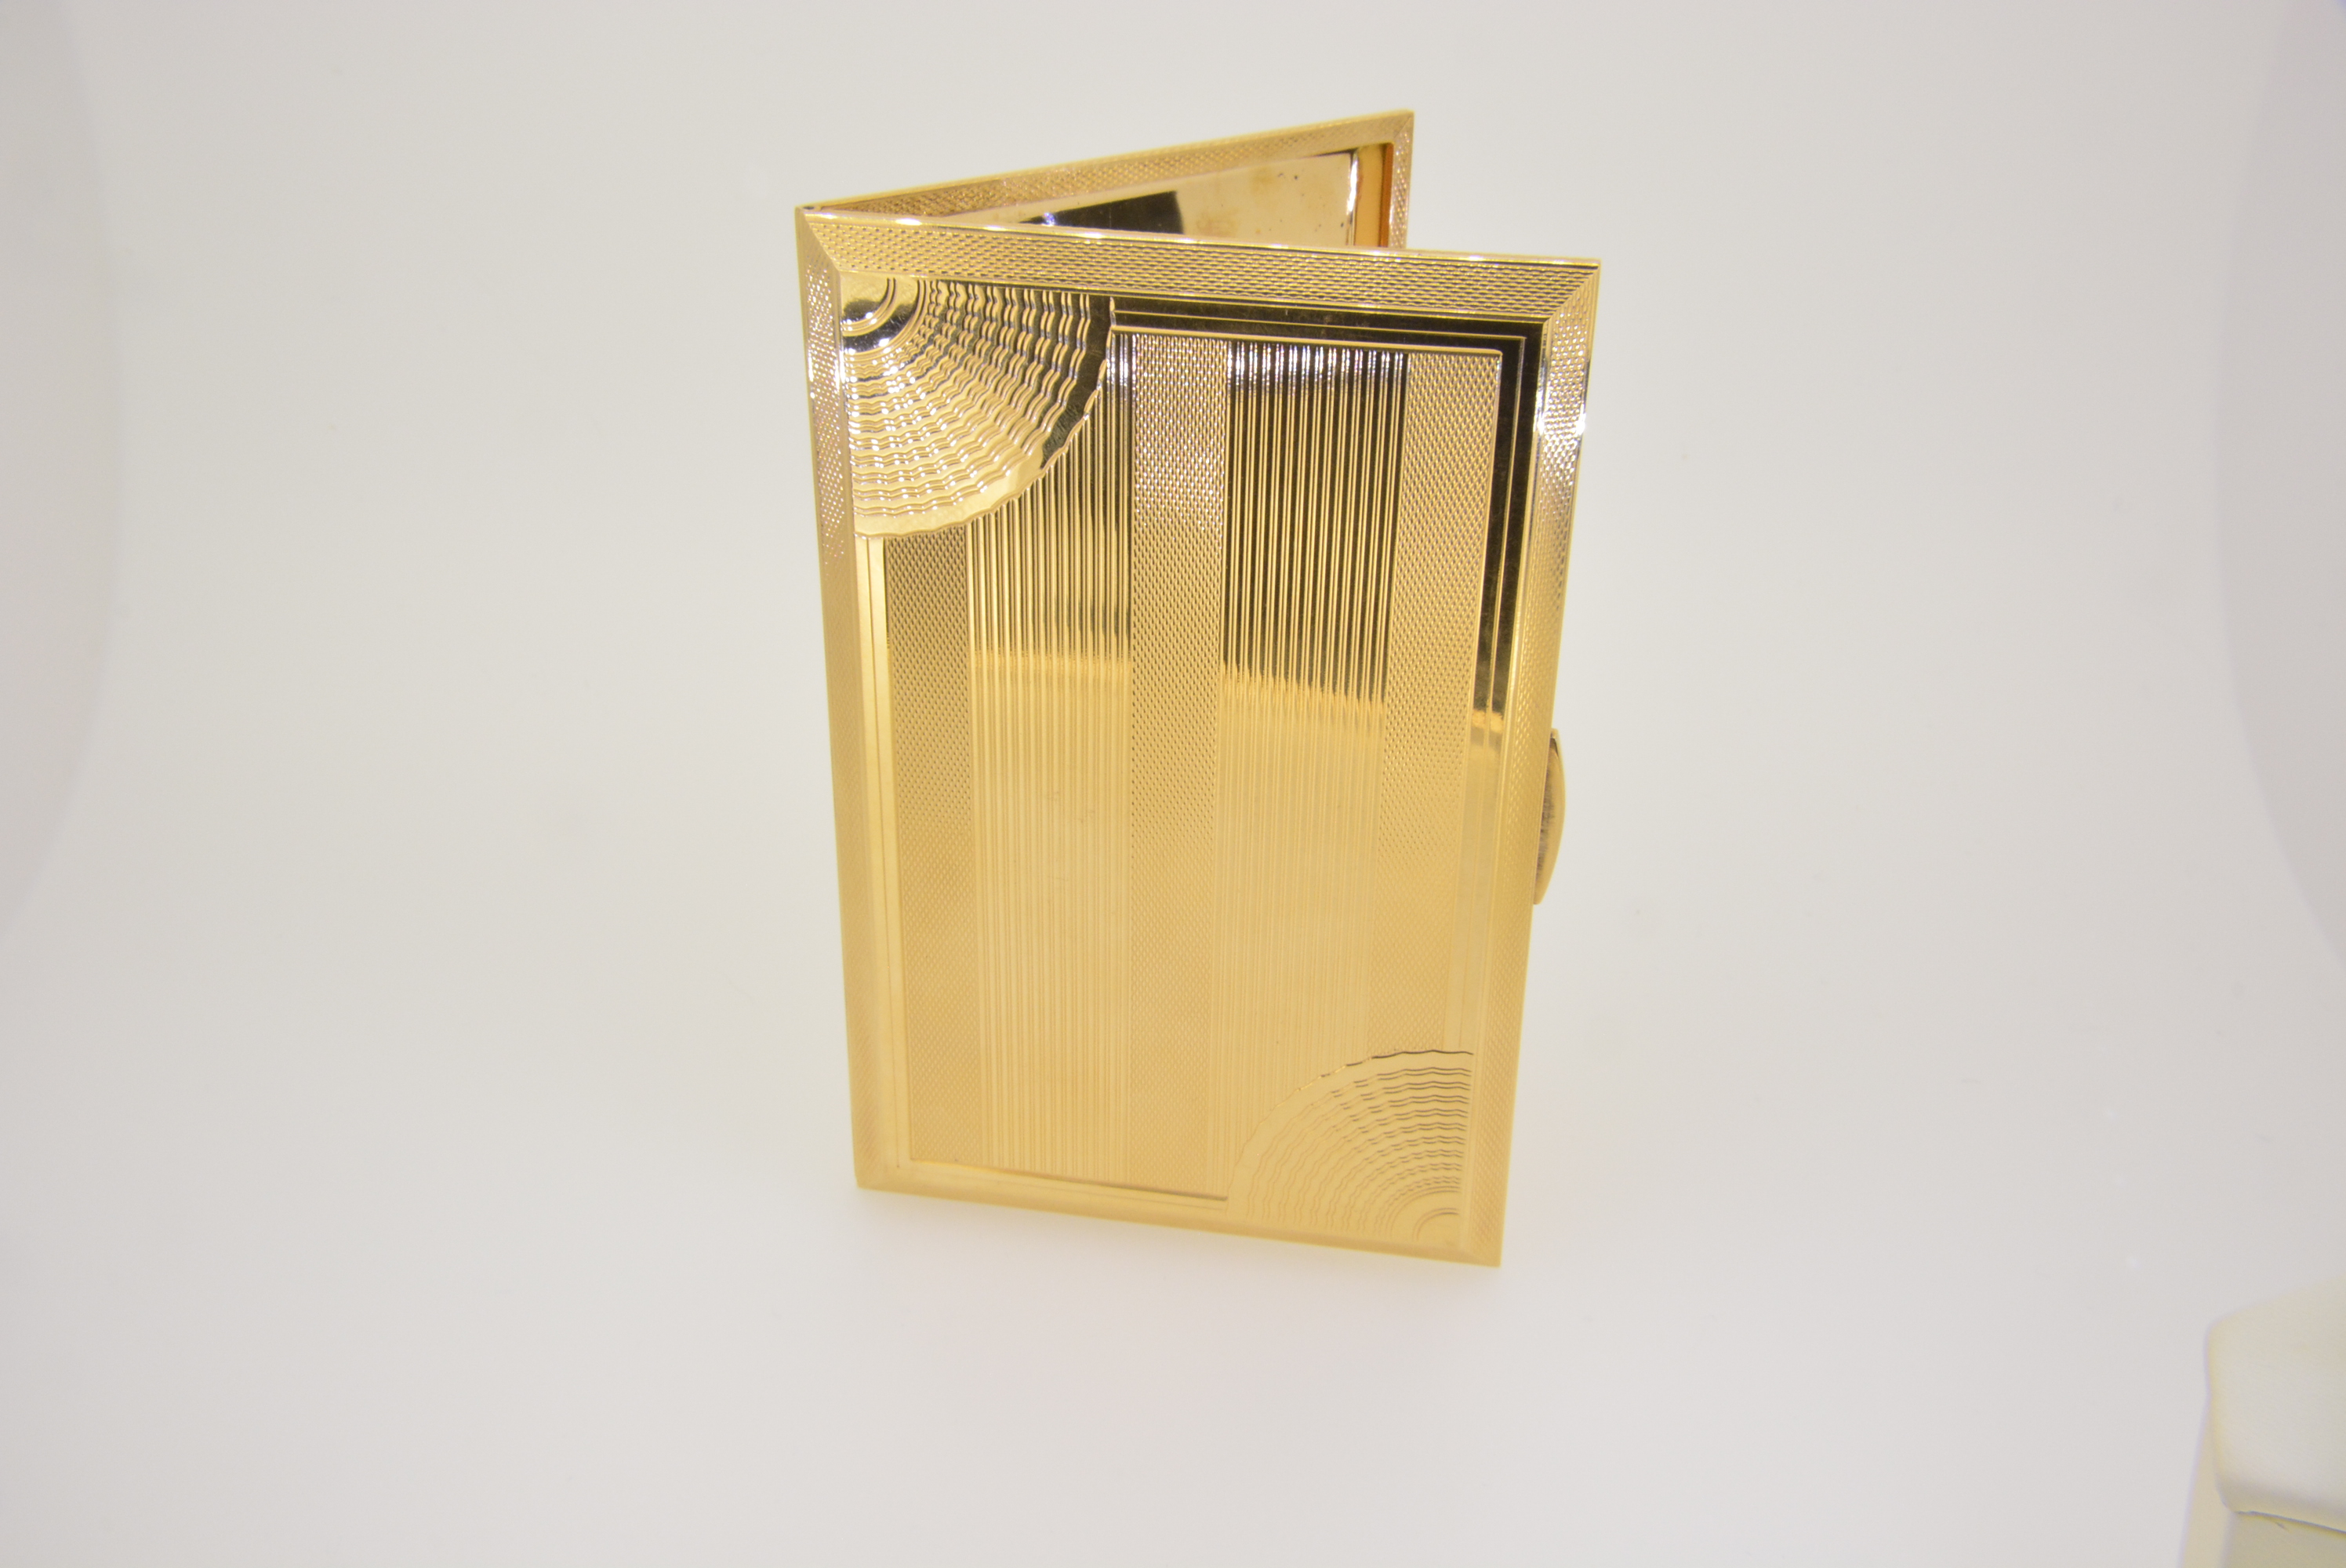 18 Karat Gold Cigarette Holder Case British Style